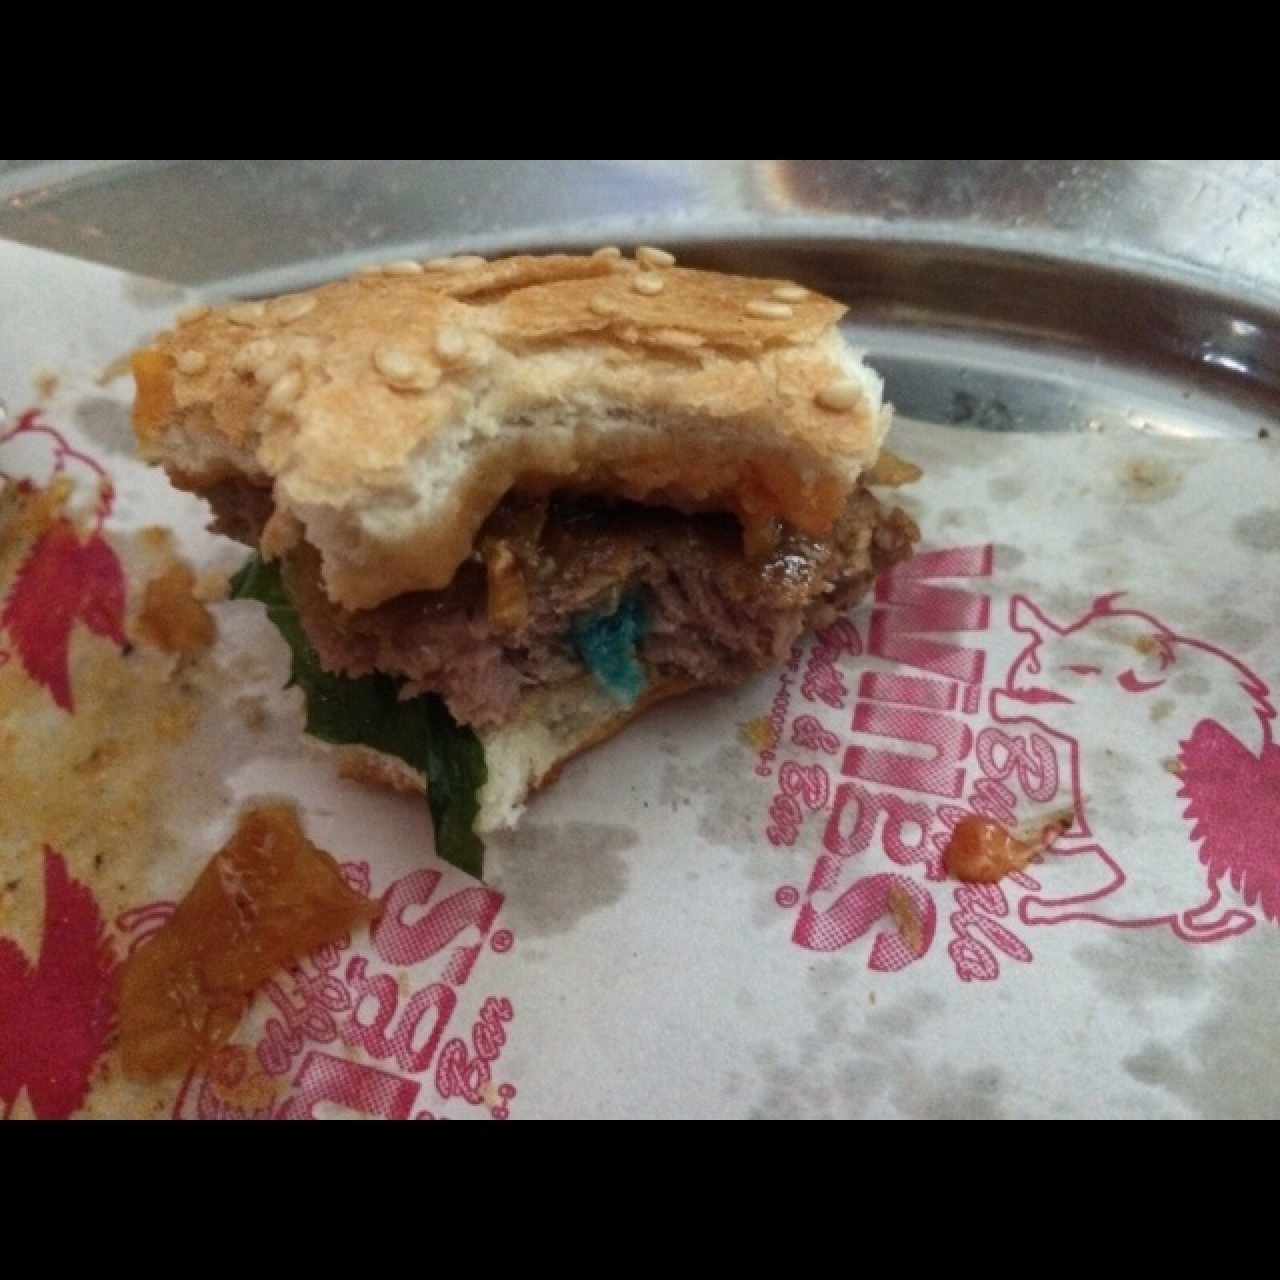 en mi hamburguesa aparecio esto azul